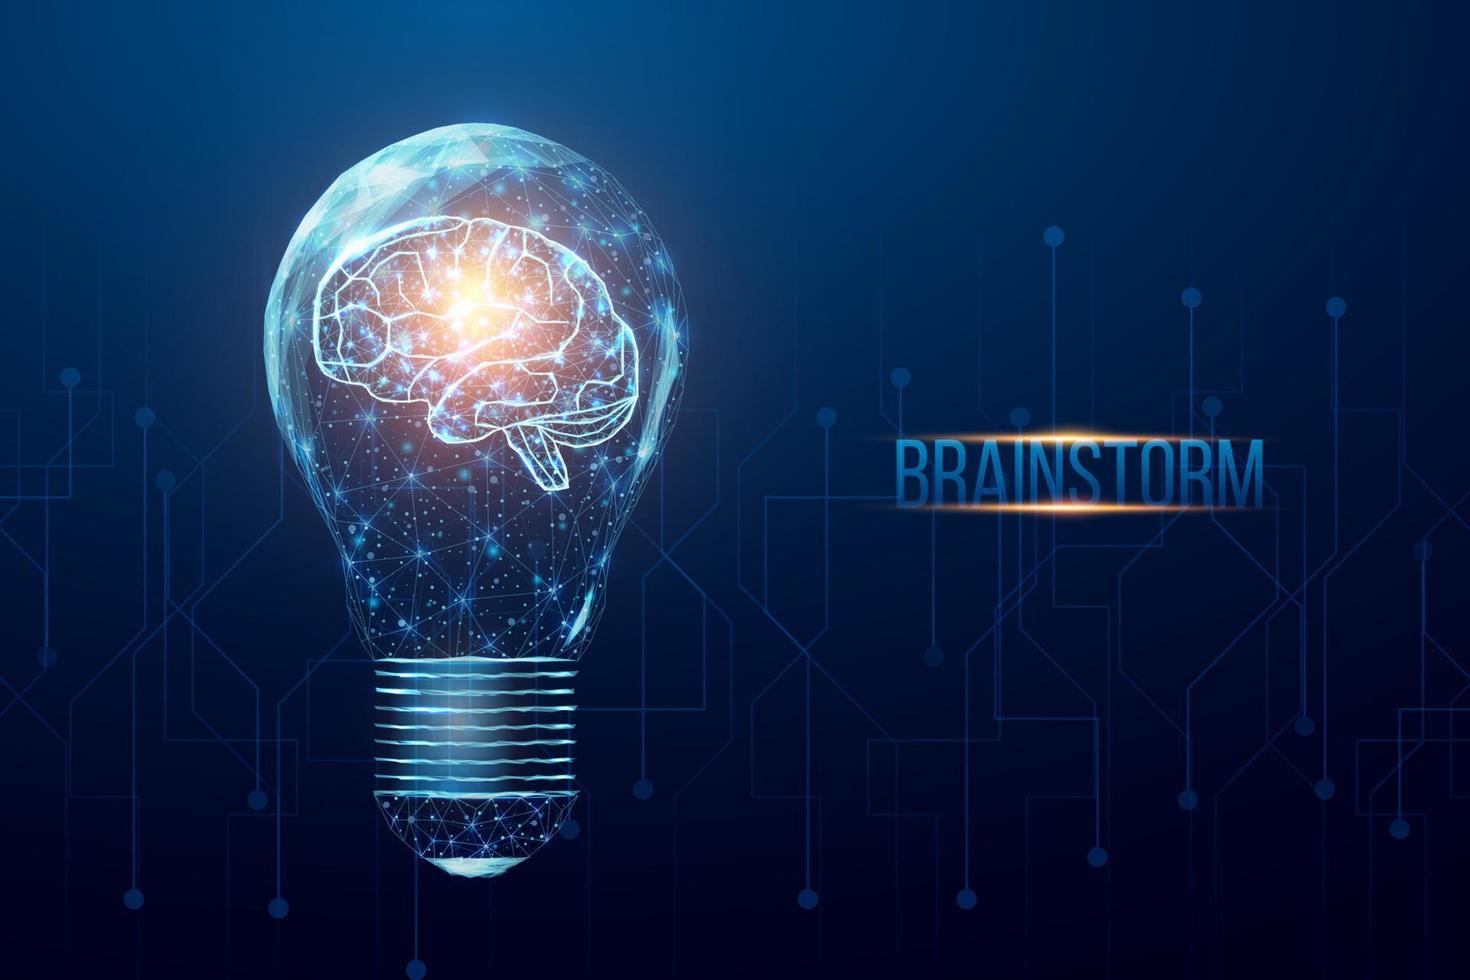 cérebro humano poligonal de wireframe em uma lâmpada. ideia de negócio, conceito de brainstorming com lâmpada brilhante de baixo poli. vetor